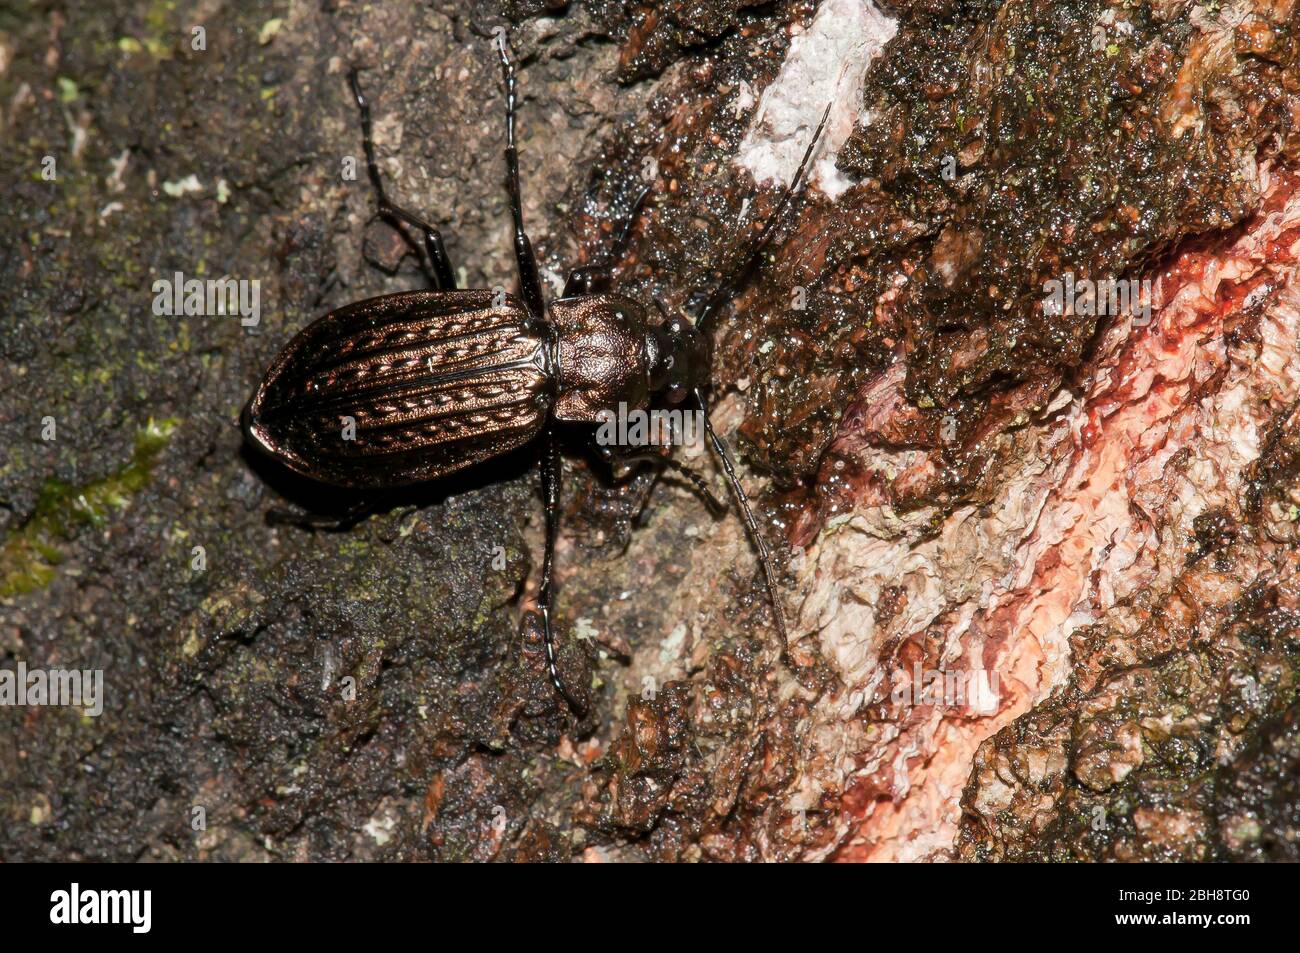 Ground beetle, Carabus granulatus, on deadwood, Bavaria, Germany Stock Photo